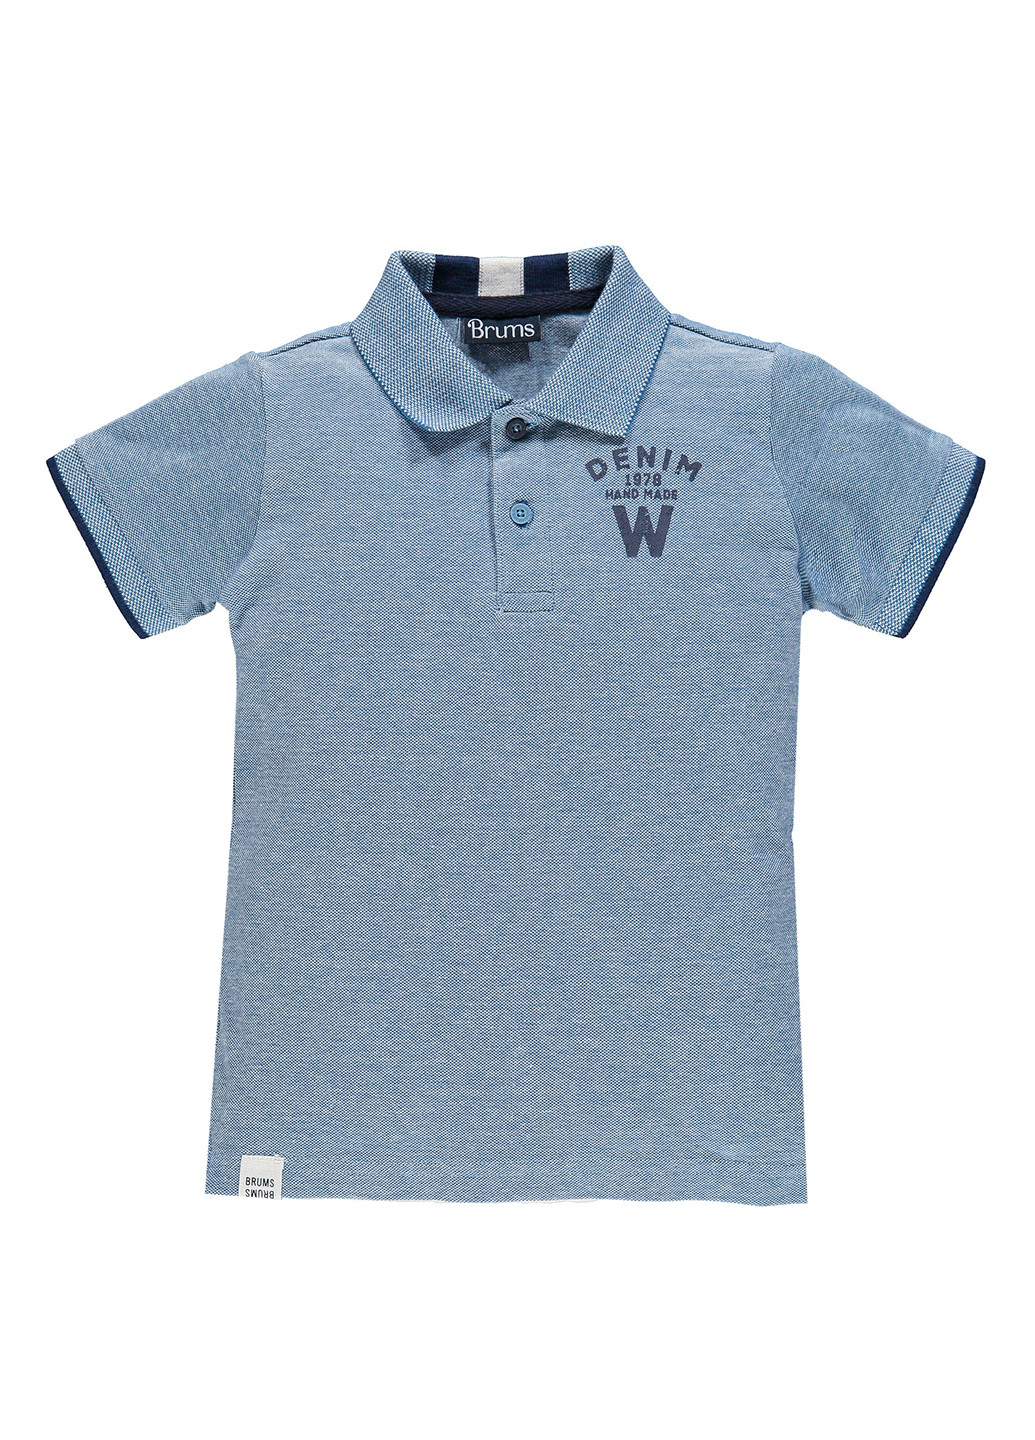 Синяя детская футболка-поло для мальчика Brums с надписью